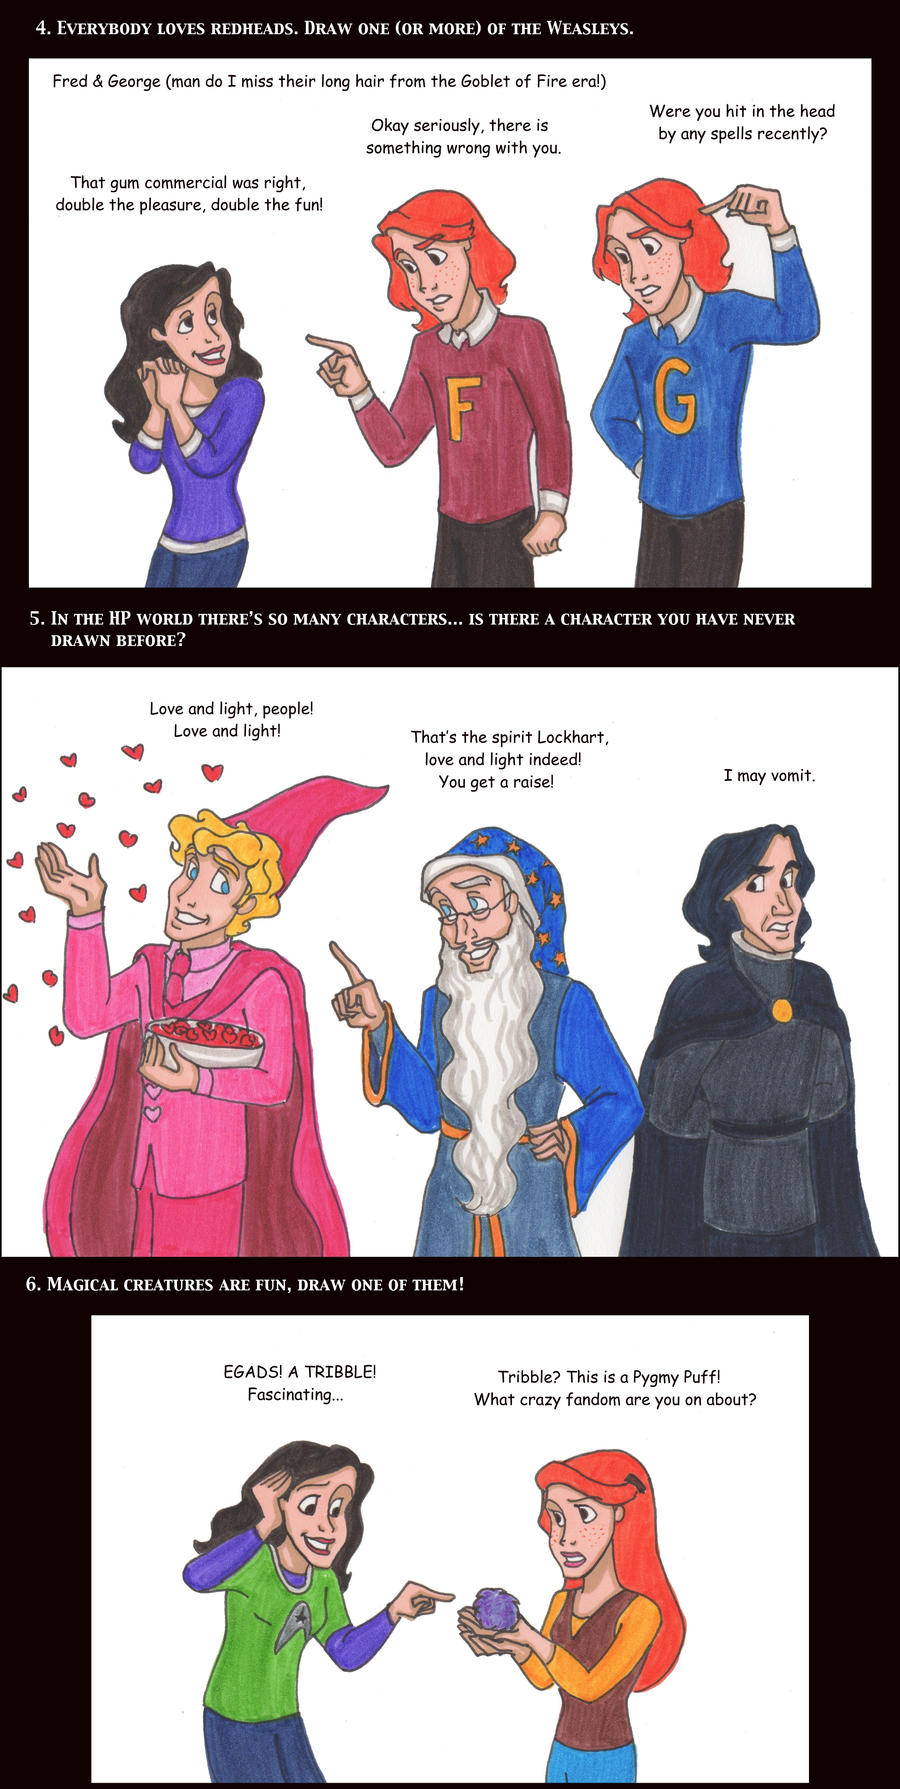 Harry Potter Memes Part 1 